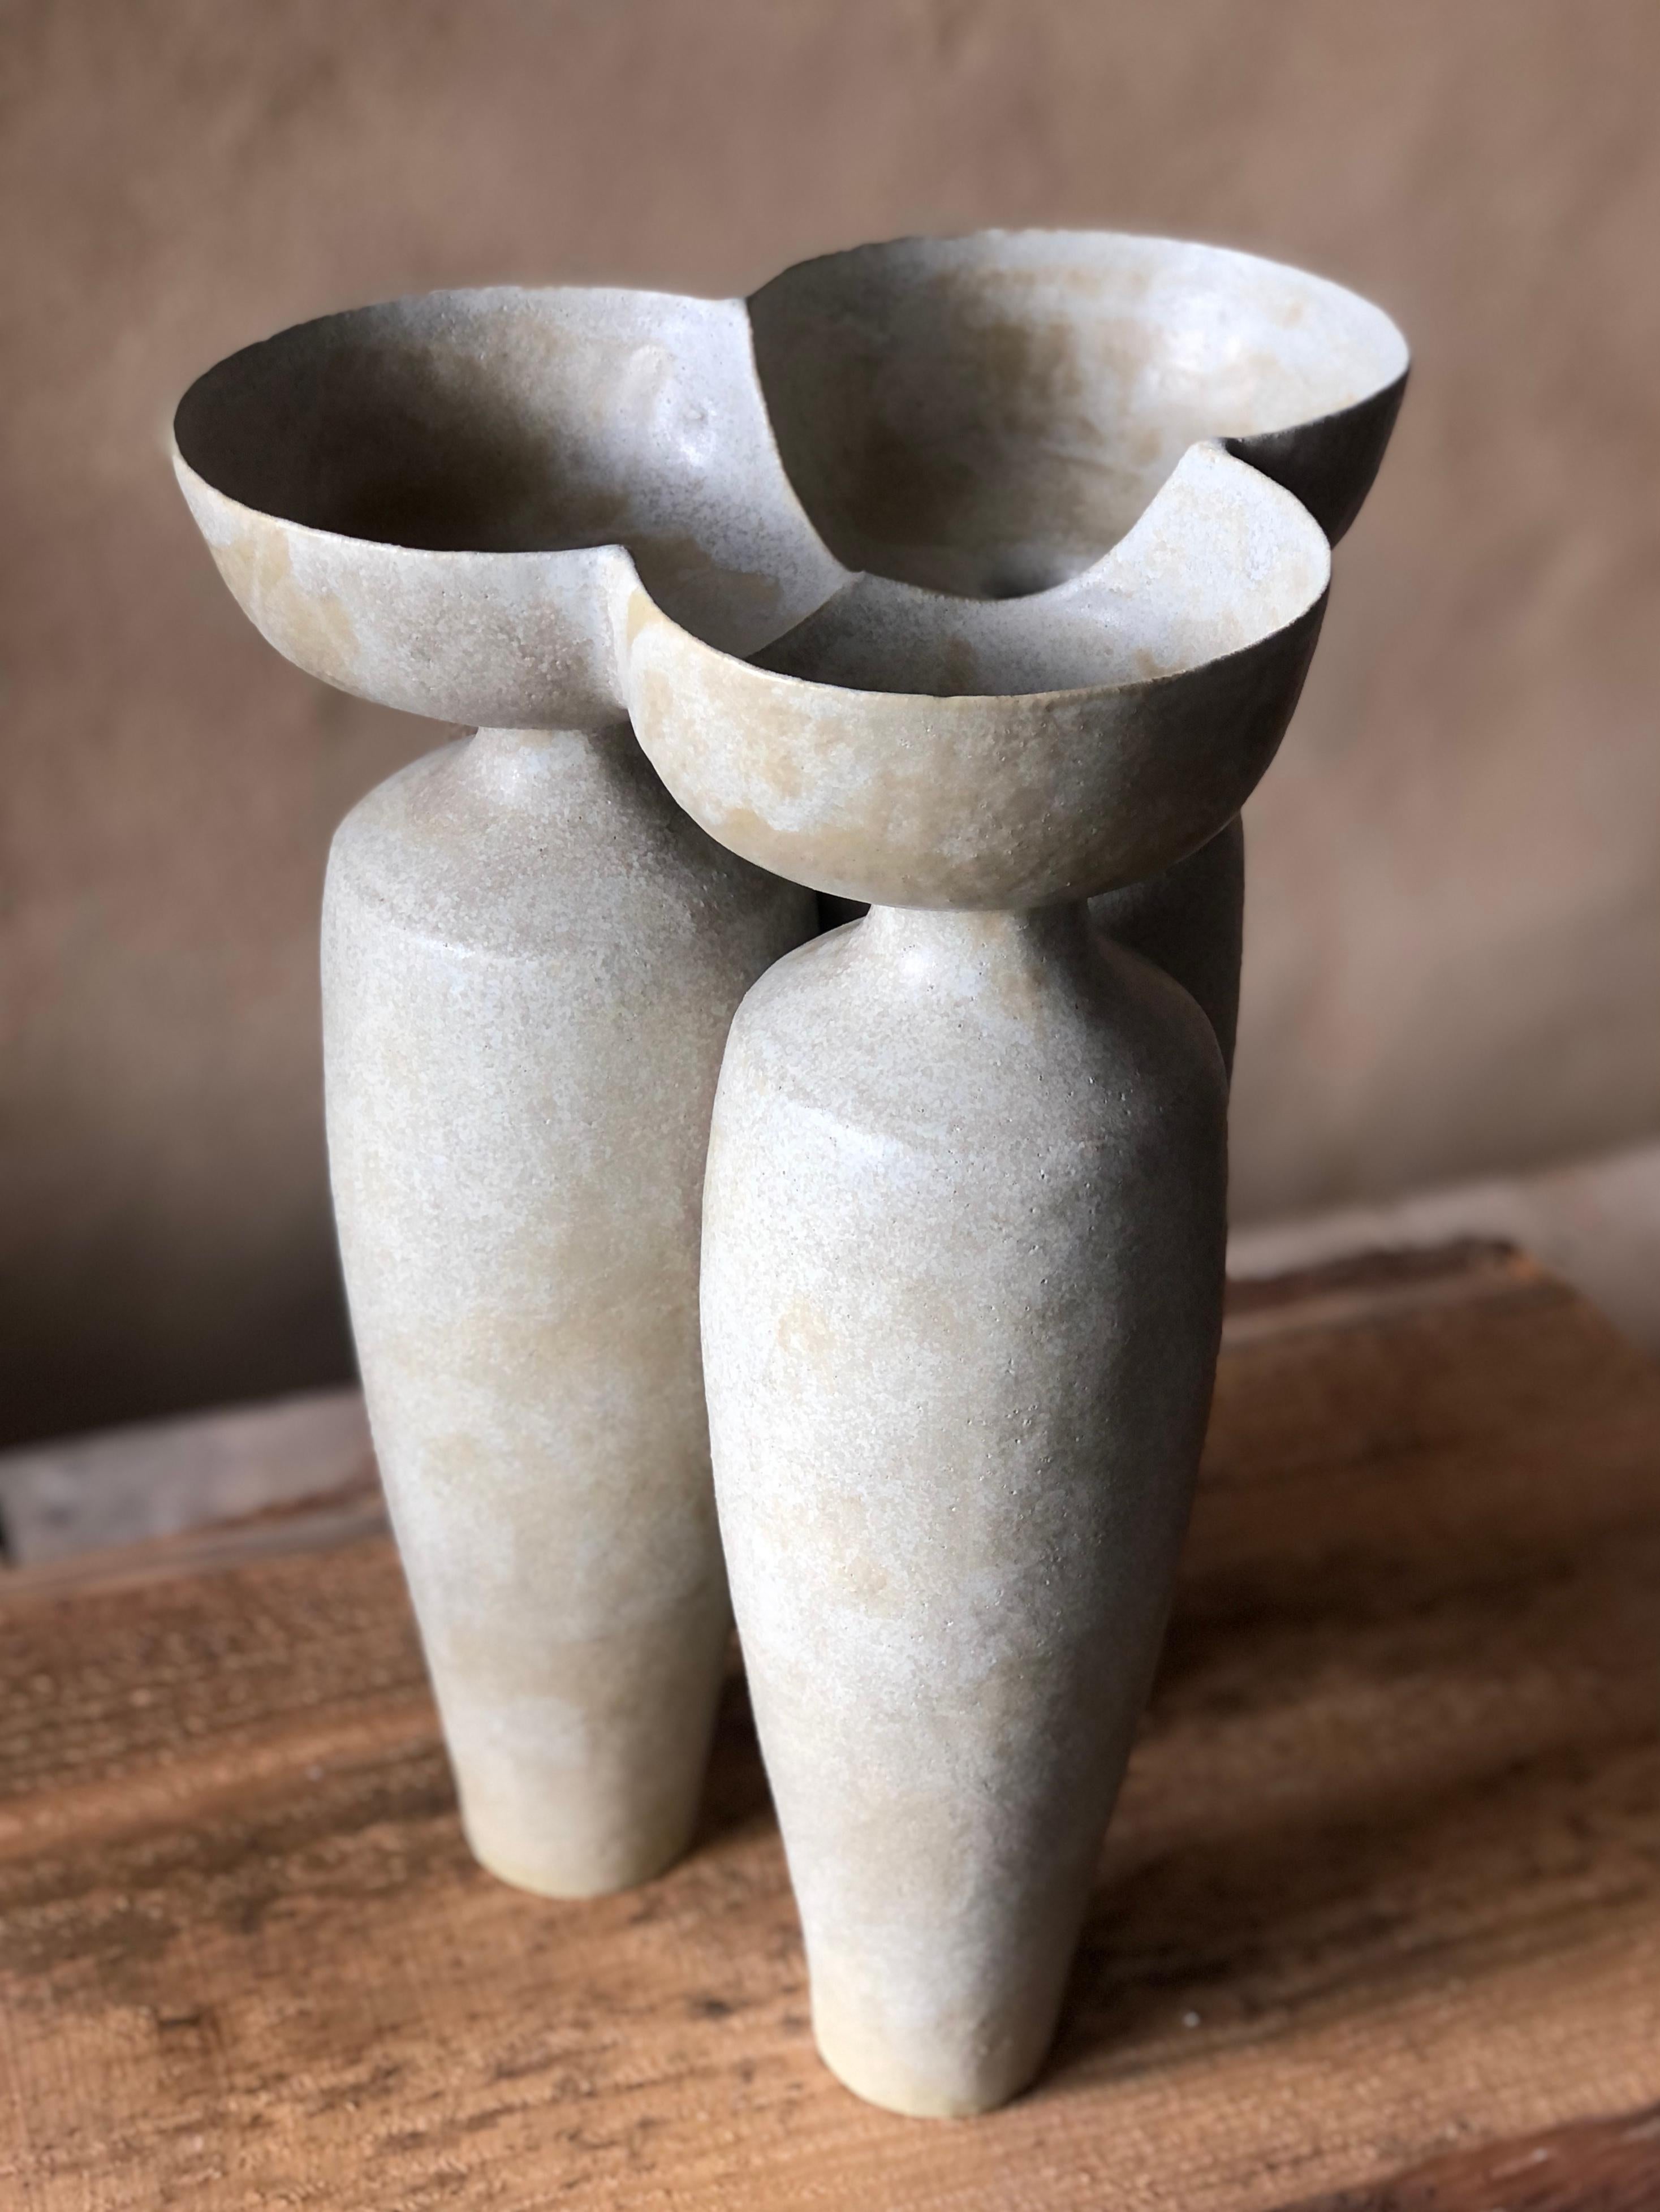 Meeting-Vase von Sophie Vaidie
Einzigartig.
Abmessungen: Ø 25 x H 39 cm. 
MATERIALIEN: Beigefarbenes Steingut mit beiger Glasur.

Am Anfang stand das Bedürfnis, mit den Händen, dem Tastsinn, den Sinnen zu arbeiten. Dann kam der Wunsch auf, Objekte